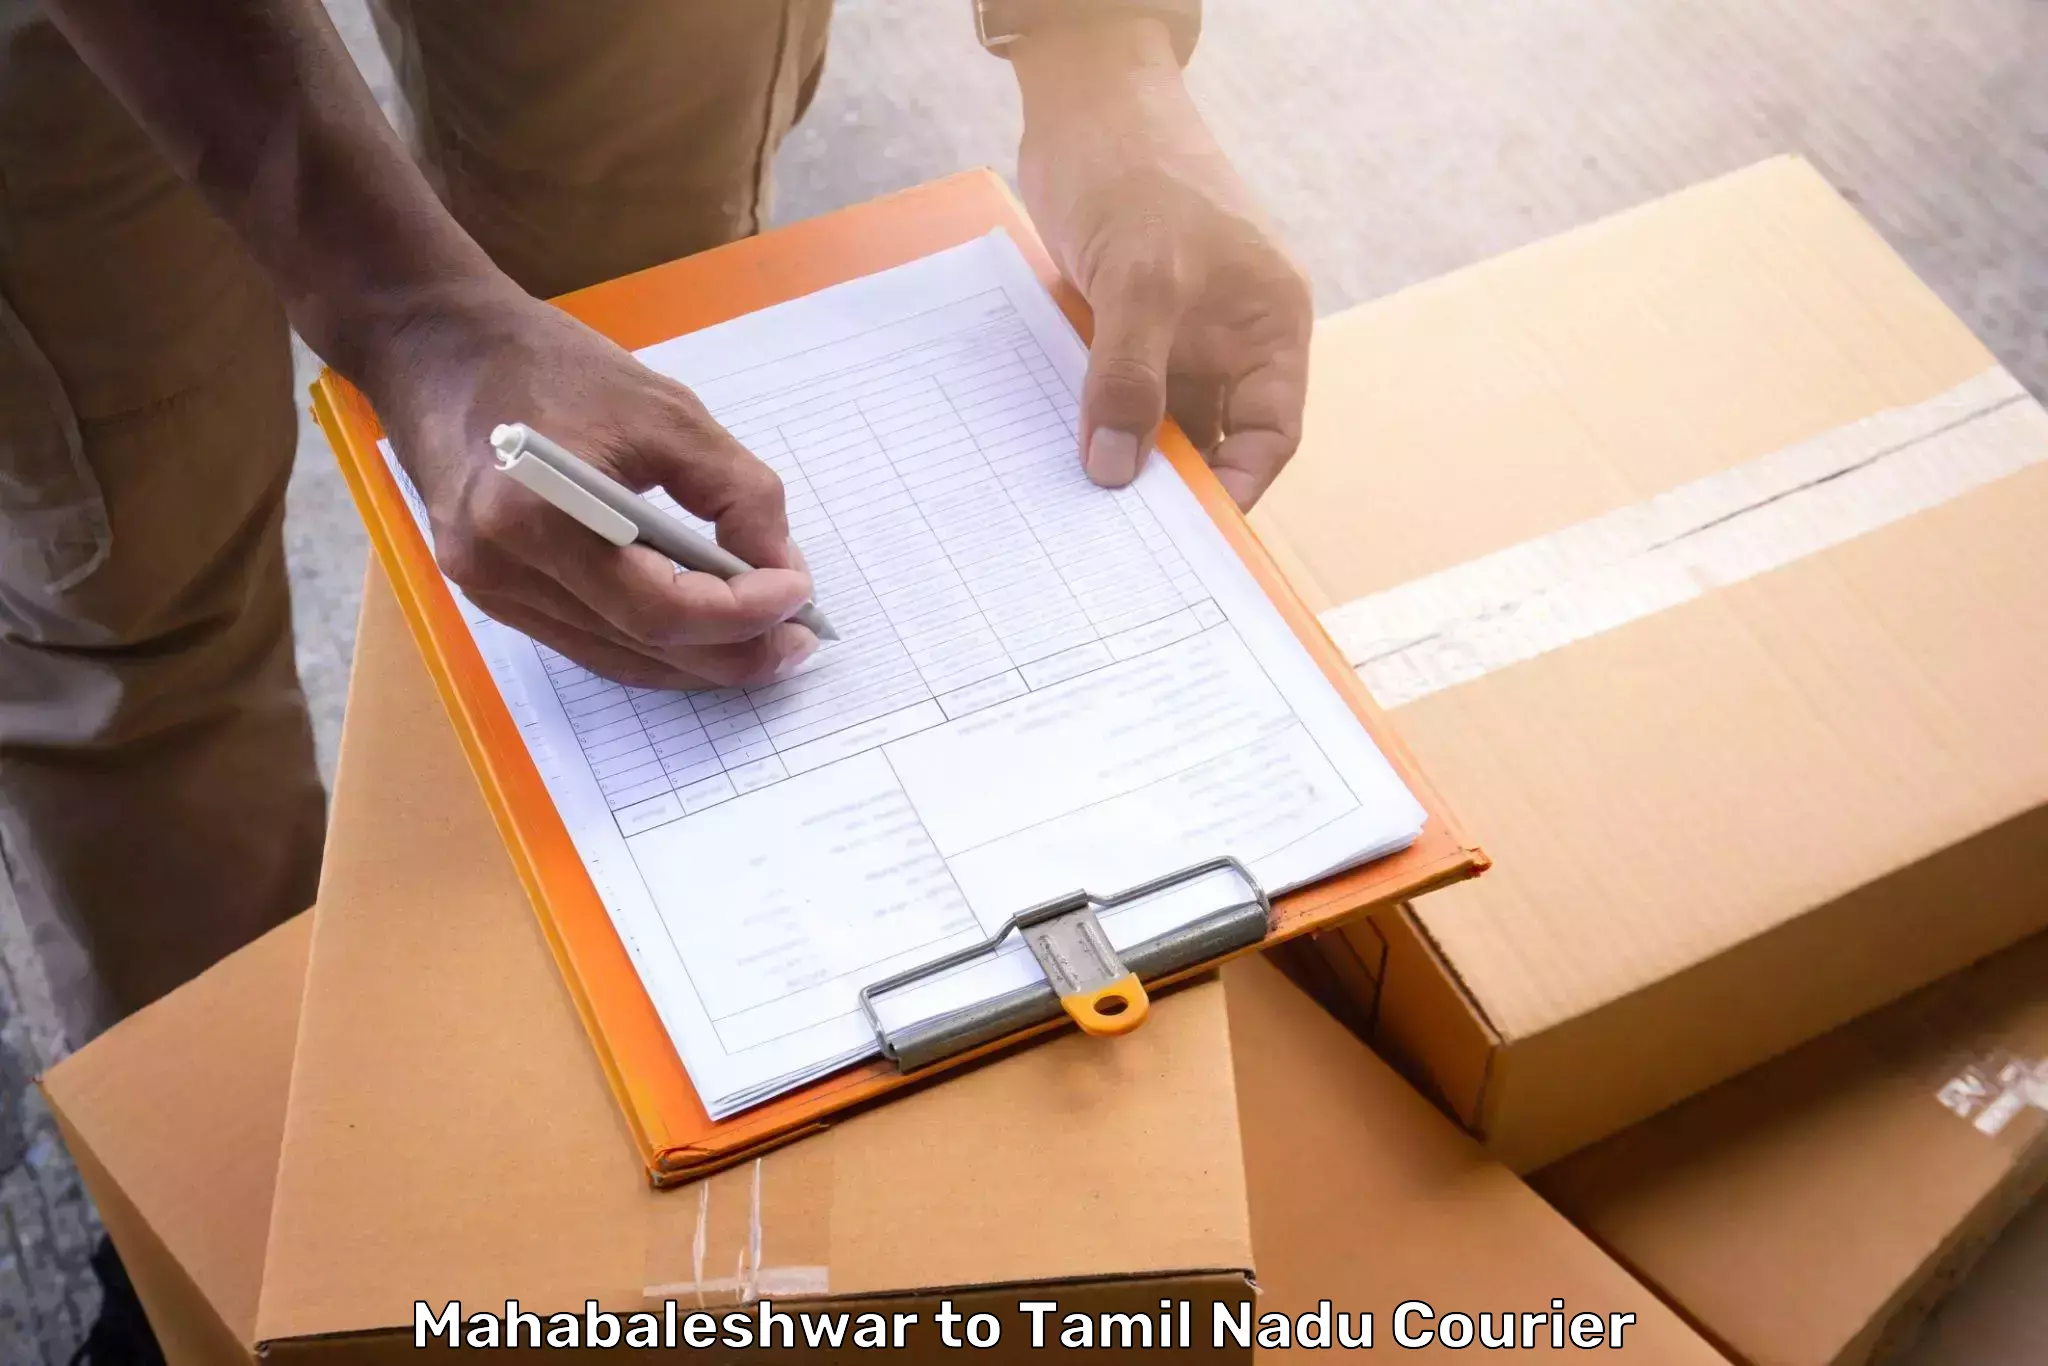 Baggage shipping service Mahabaleshwar to Tiruturaipundi